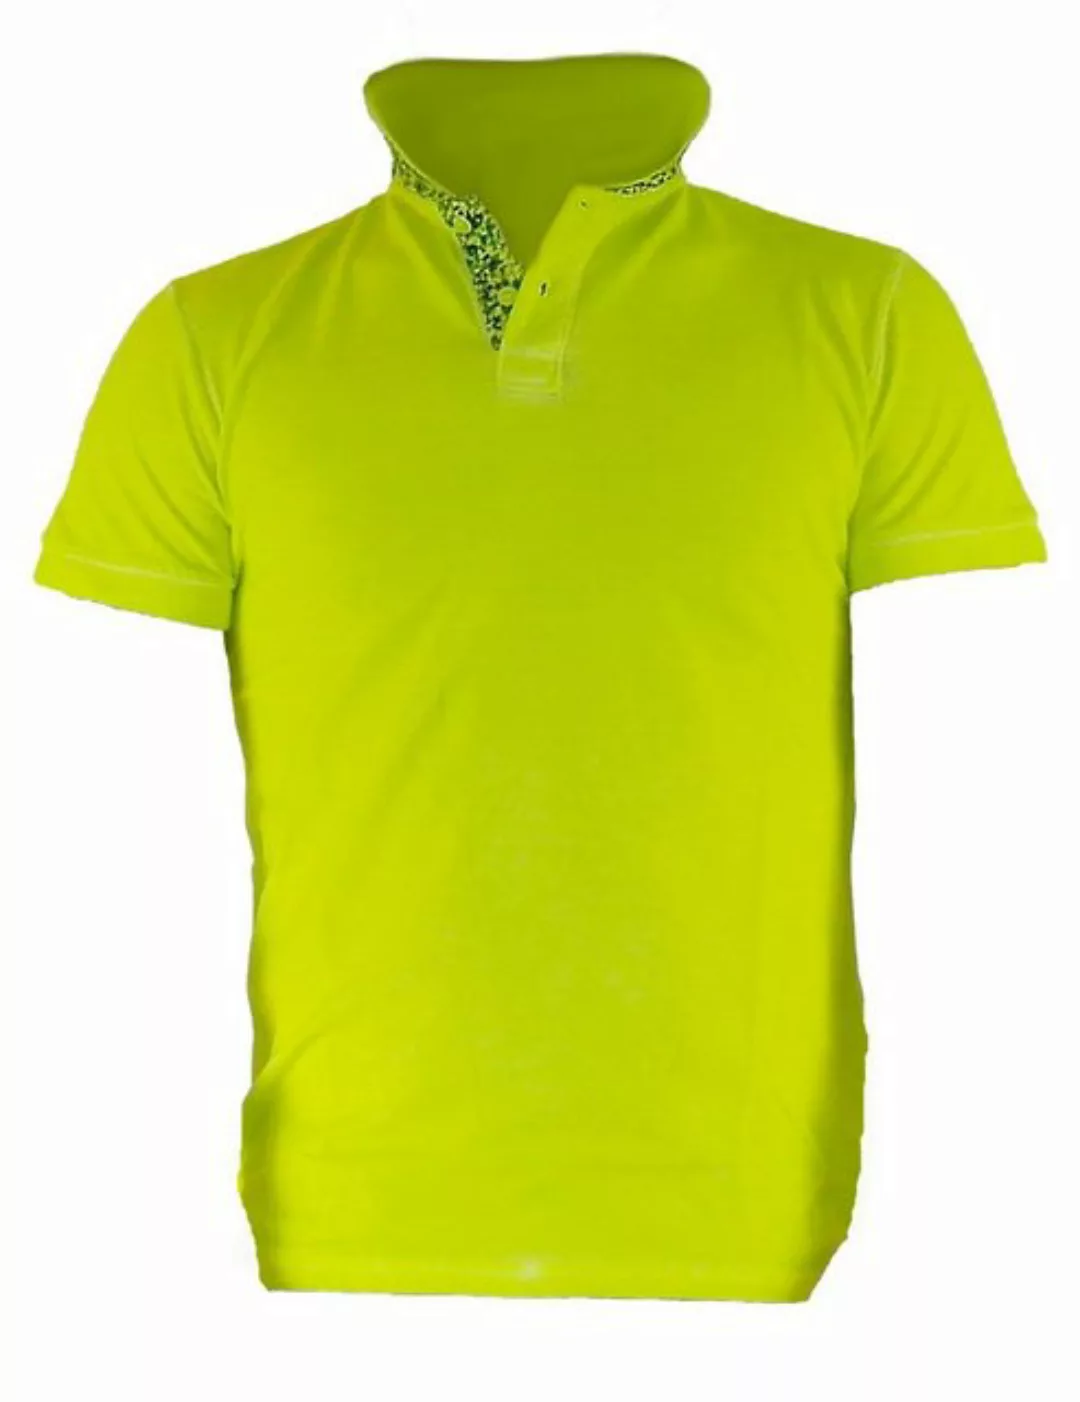 YESET Poloshirt Herren Shirt T-Shirt Poloshirt Tank Top Hemd Kurzarm Figurb günstig online kaufen